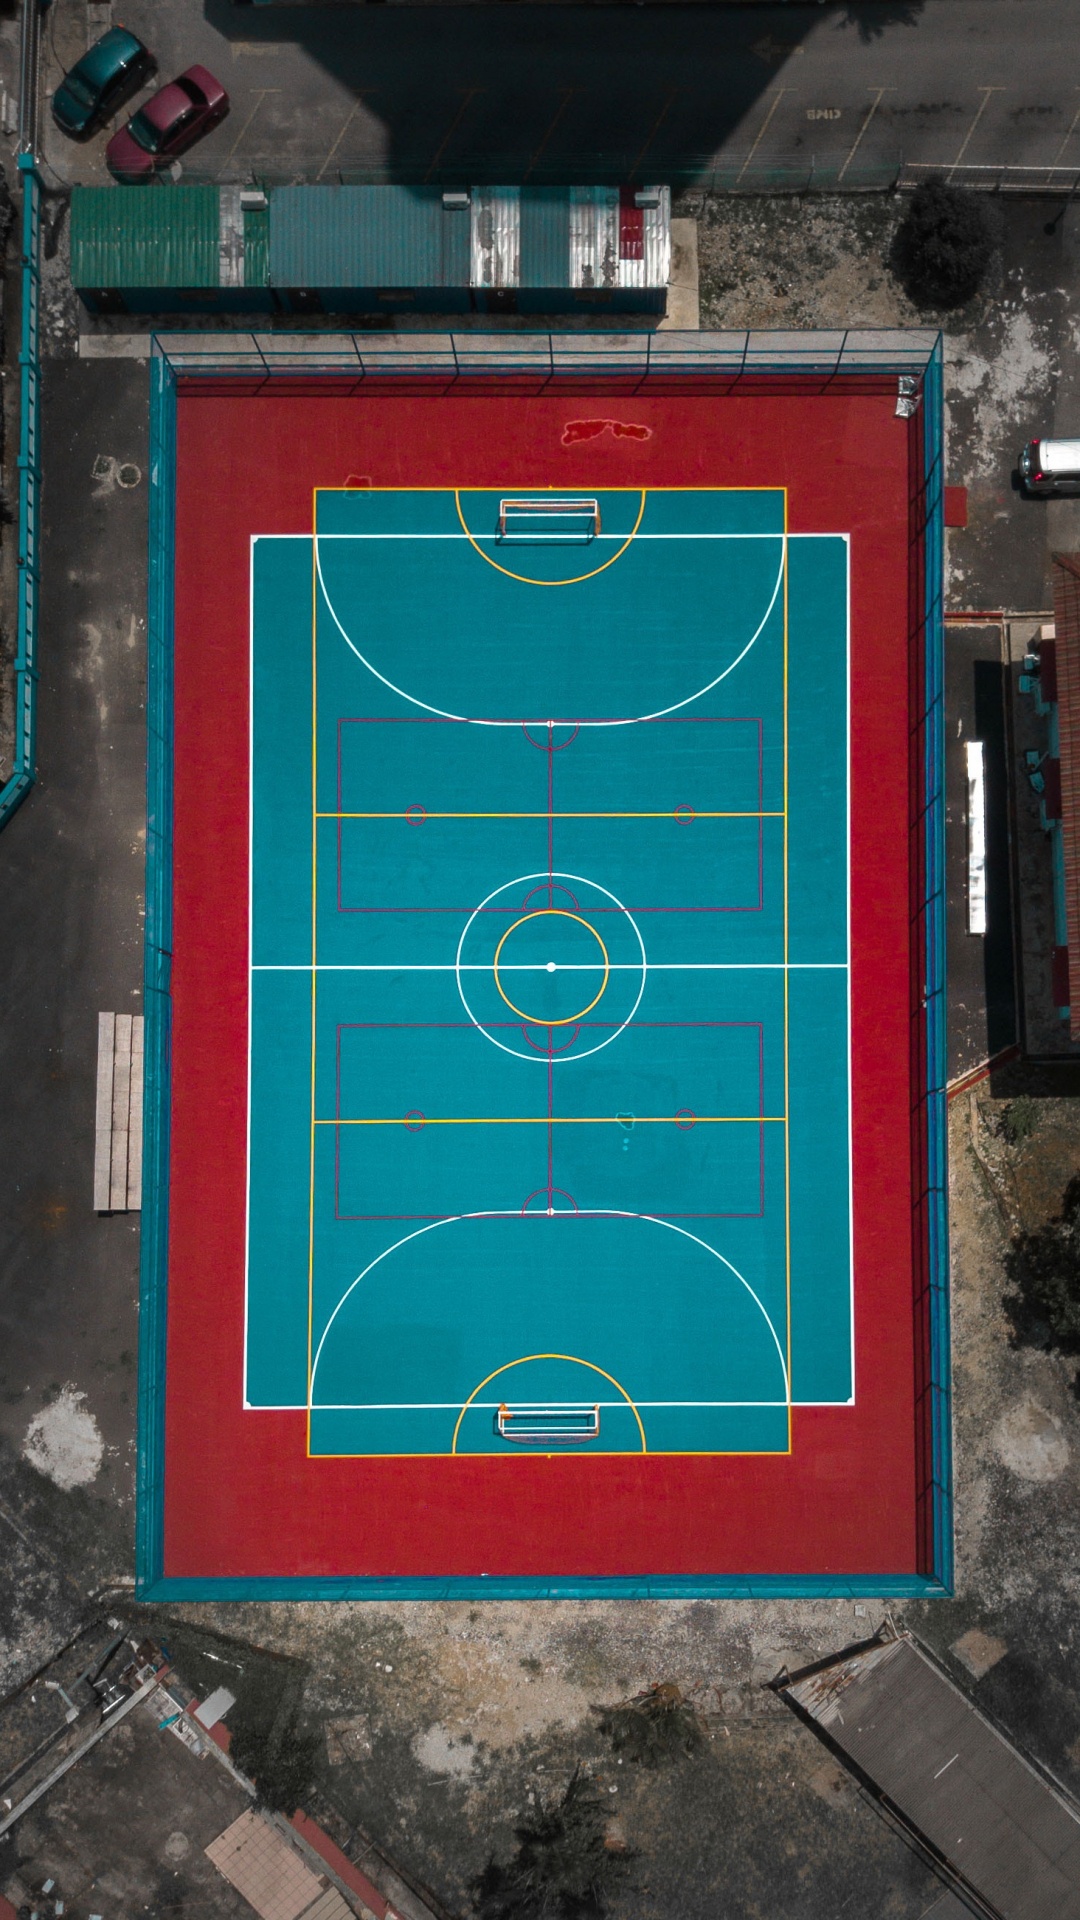 Games, Anfield, Futsal, Basketballplatz, Pitch. Wallpaper in 1080x1920 Resolution